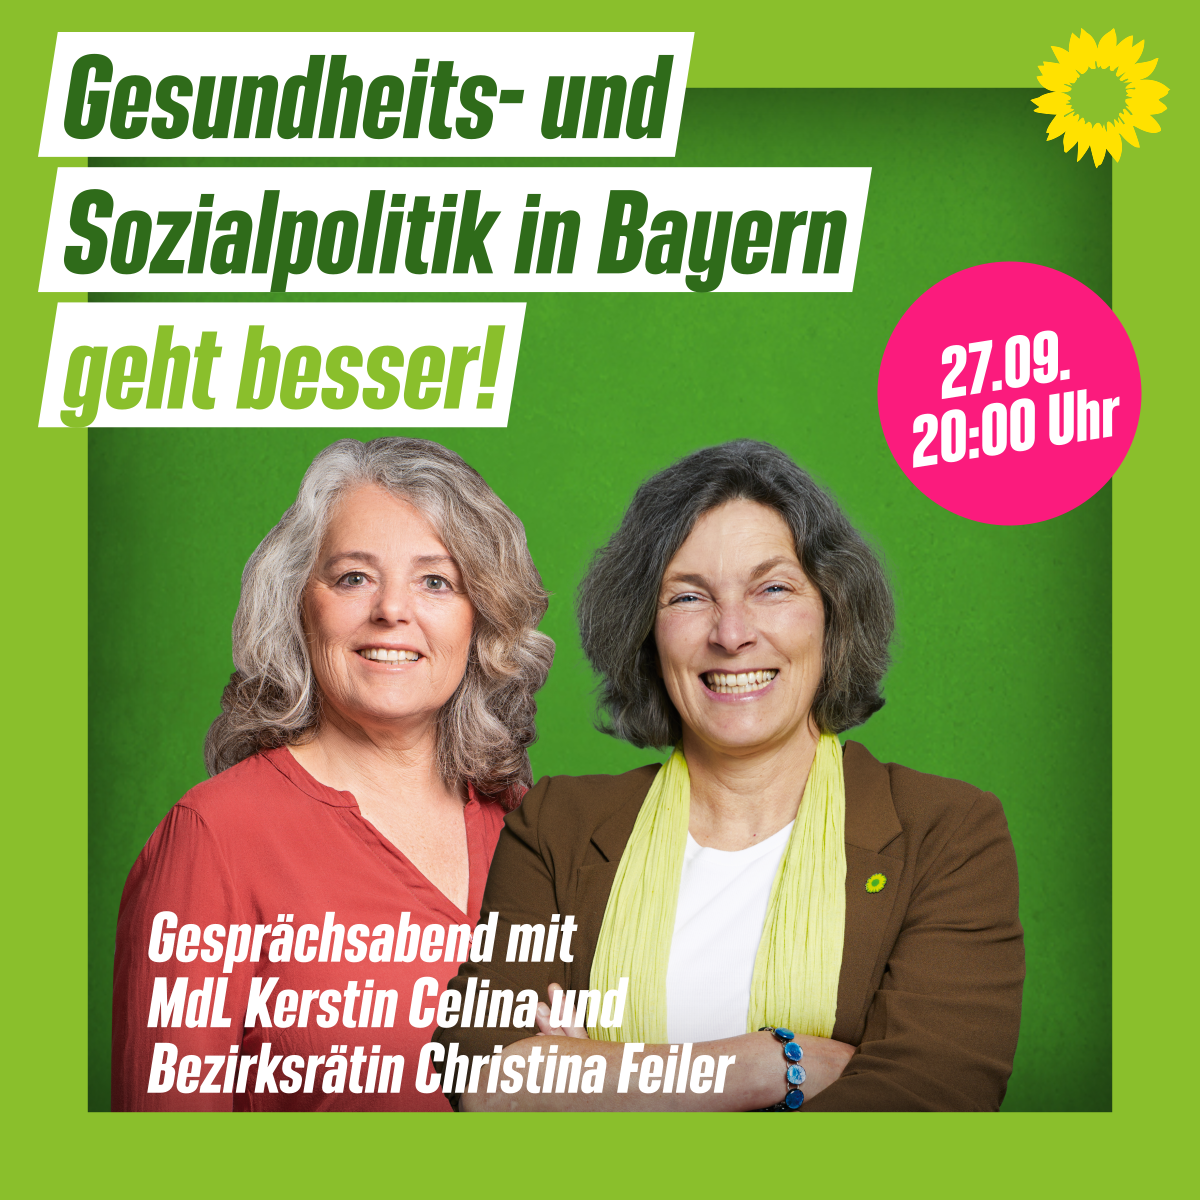 Ein Plakat mit Bezirksrätin Christina Feiler und MdL Kerstin Celina. Mit grünem Hintergrund und der Aufschrift "Gesundheits- und Sozialpolitik in Bayern geht besser!"